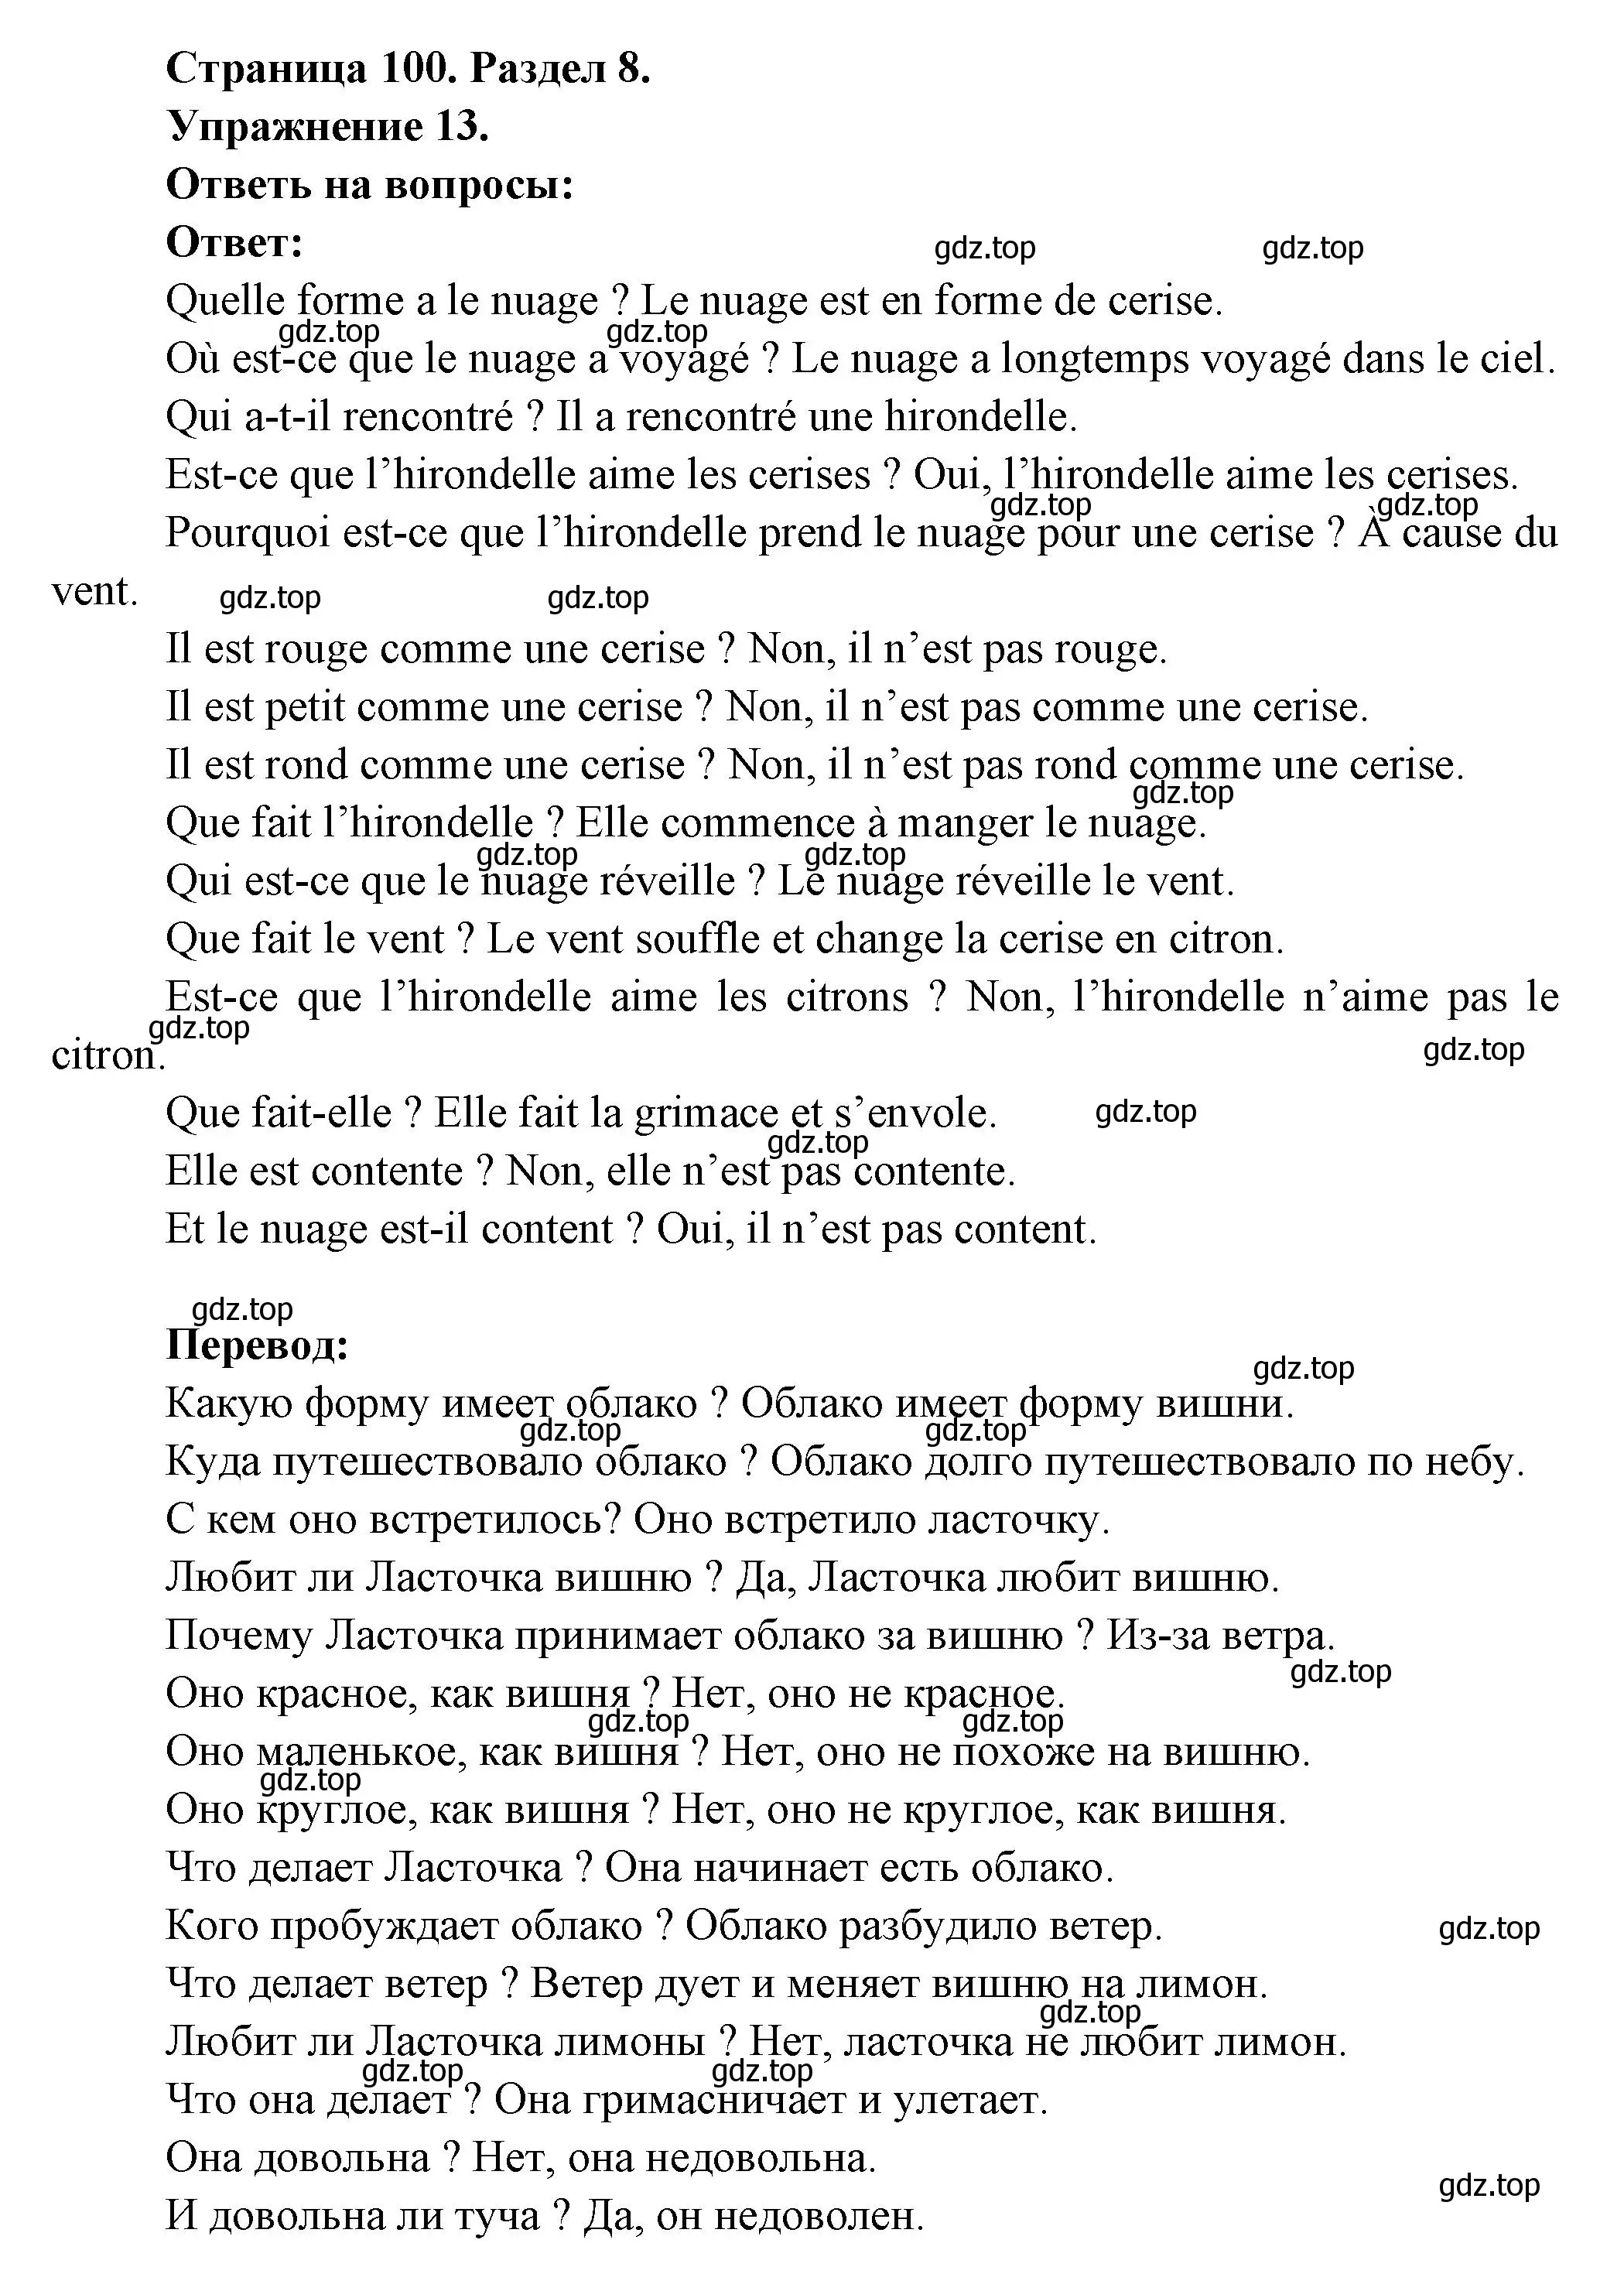 Решение номер 13 (страница 100) гдз по французскому языку 5 класс Береговская, Белосельская, учебник 2 часть